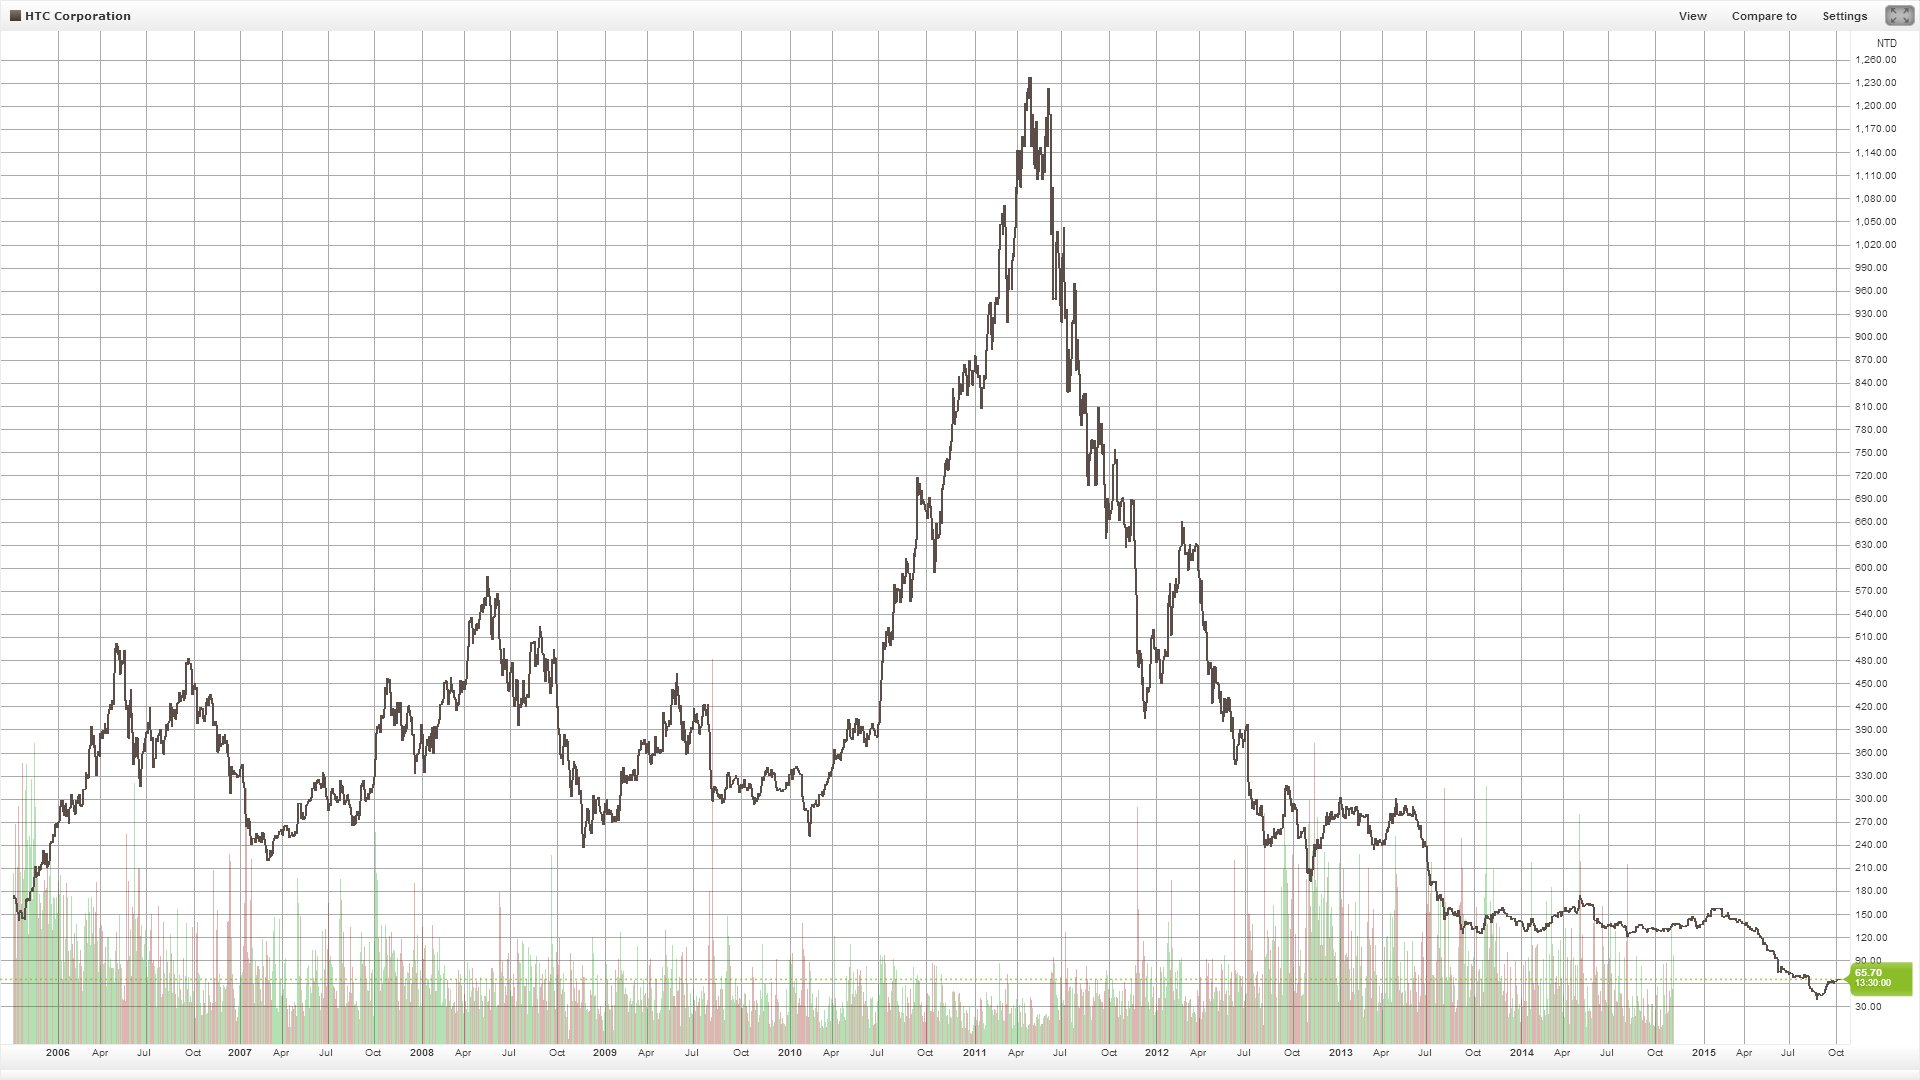 Börsenkurs von HTC seit 2005